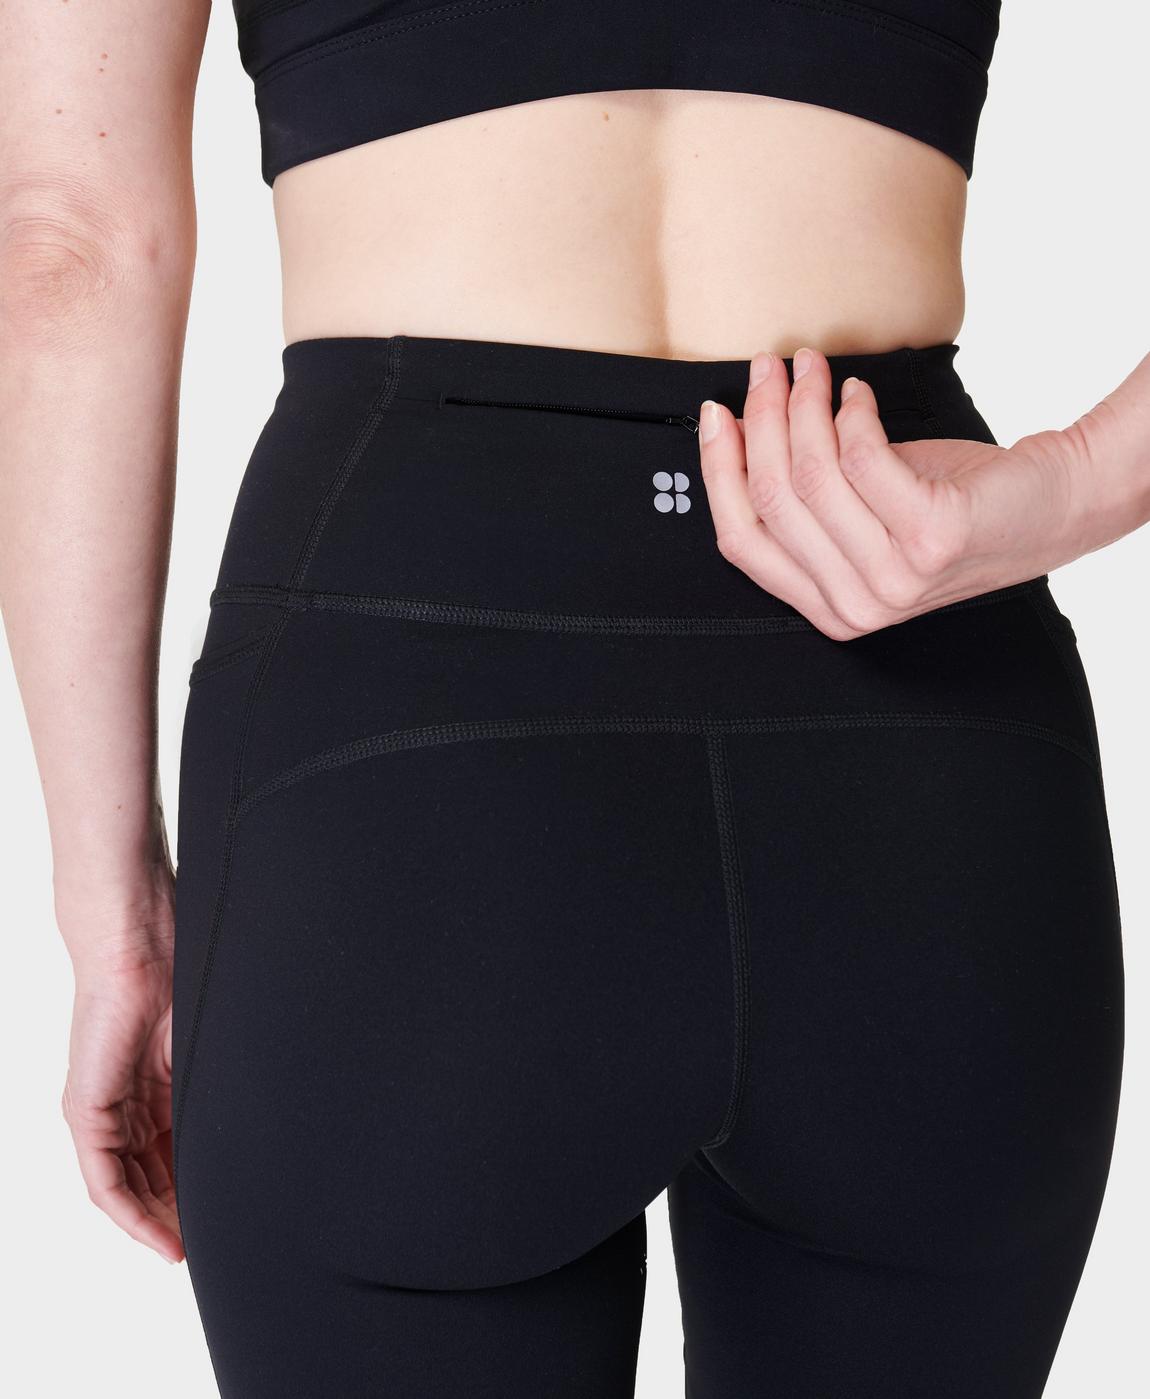 Power Bootcut Gym Trousers - Black, Women's Trousers & Yoga Pants